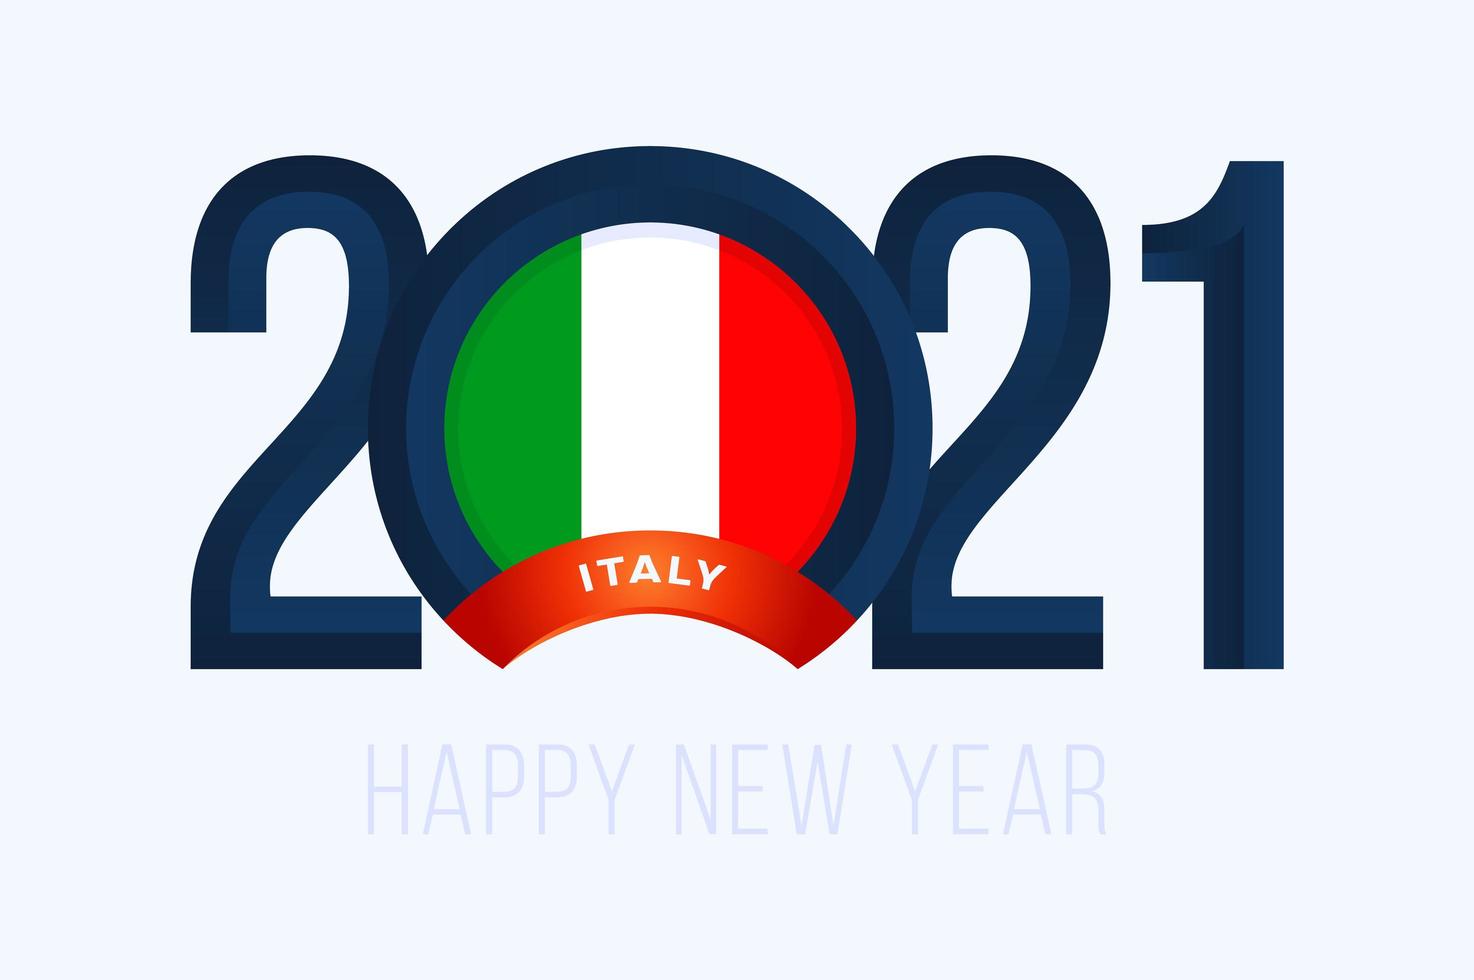 Nieuwjaar 2021 typografie met de vlag van Italië vector